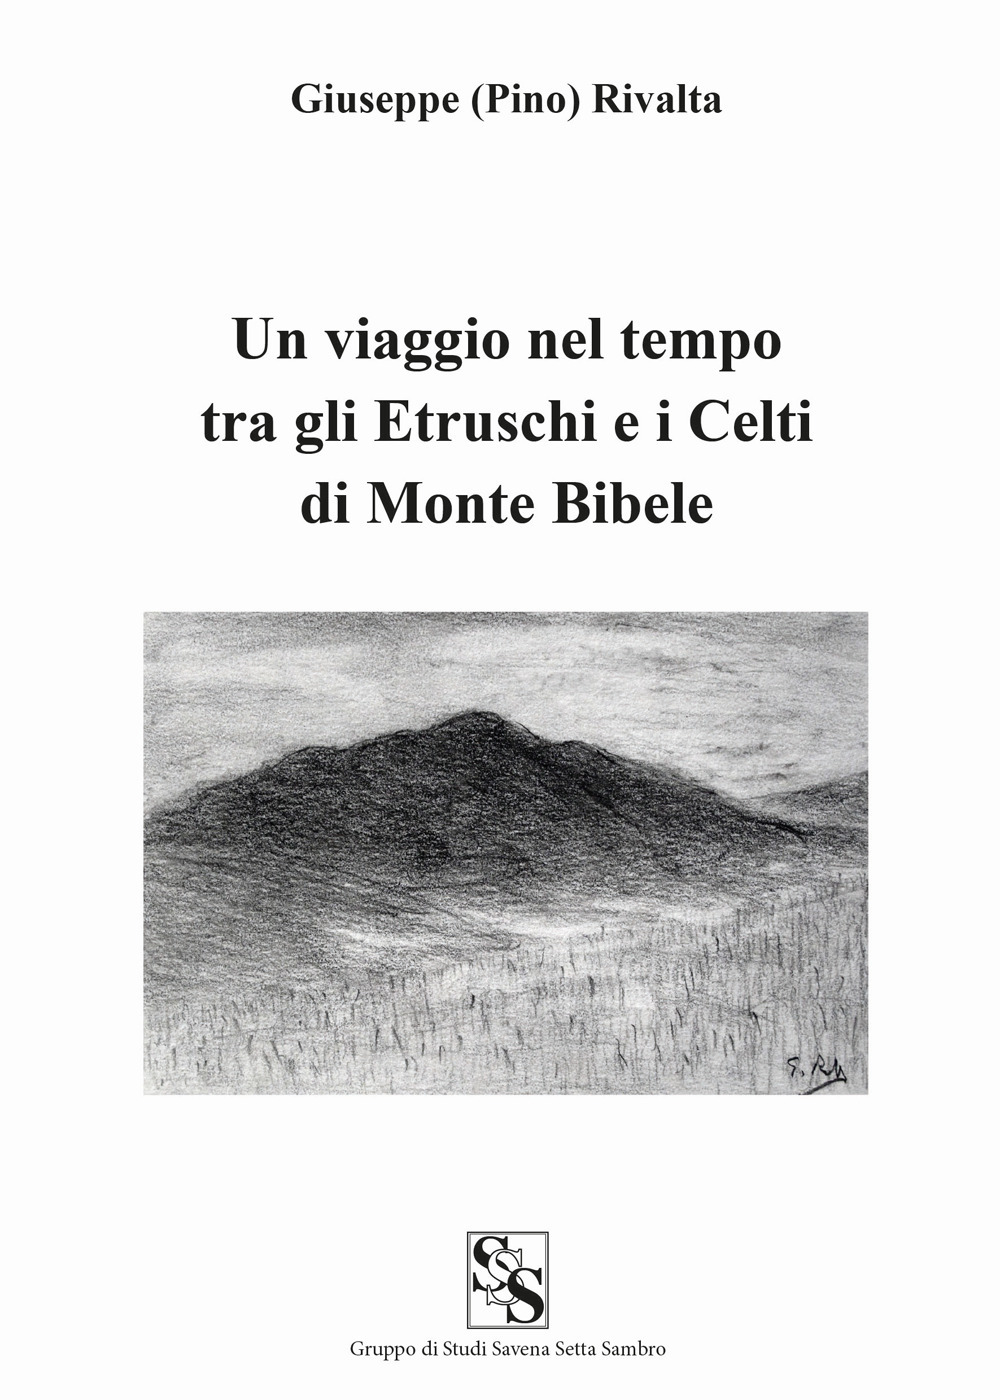 Un viaggio nel tempo tra gli etruschi e i celti di Monte Bibele